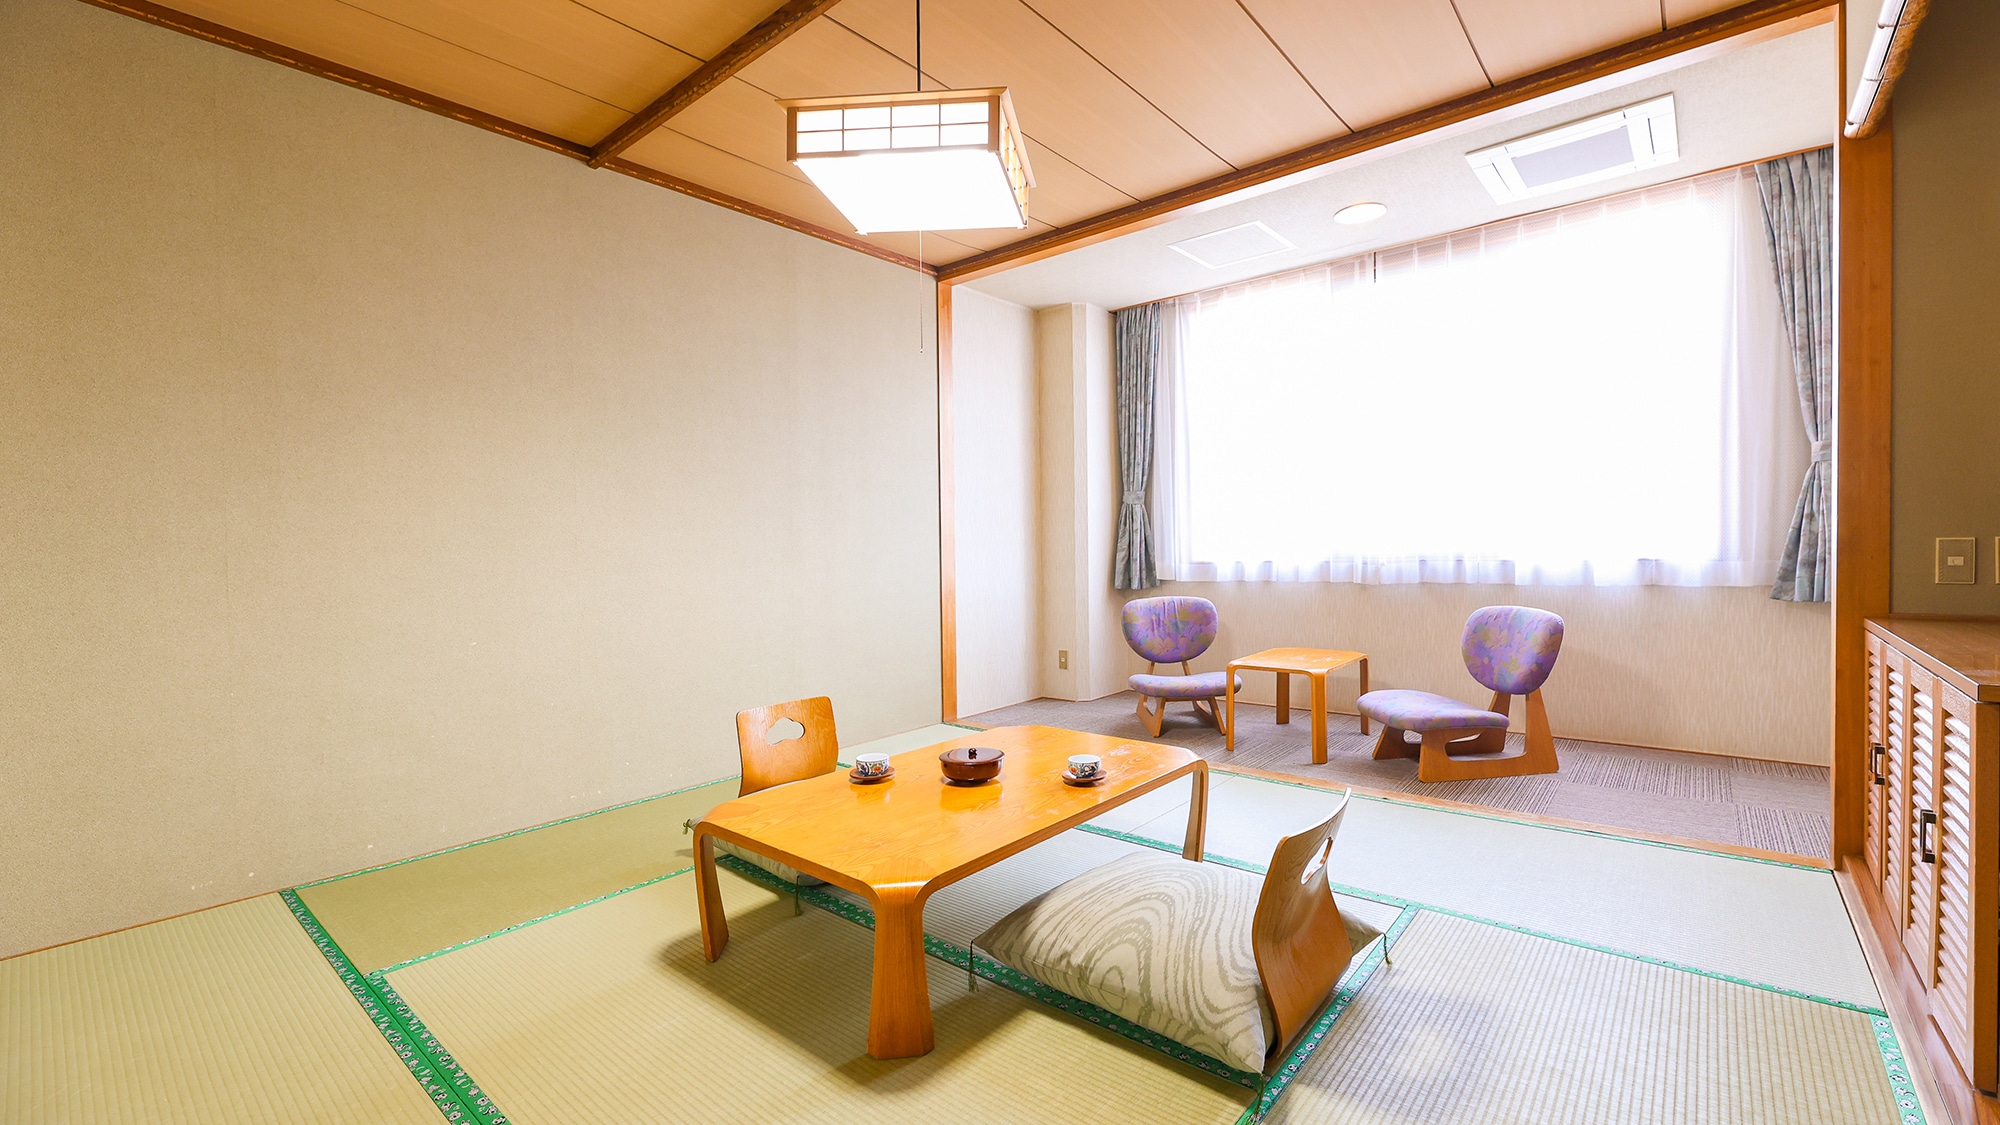 【일본식 방 8 다다미】 이초의 향기 감도는 심플하고 청결감있는 일본식 방